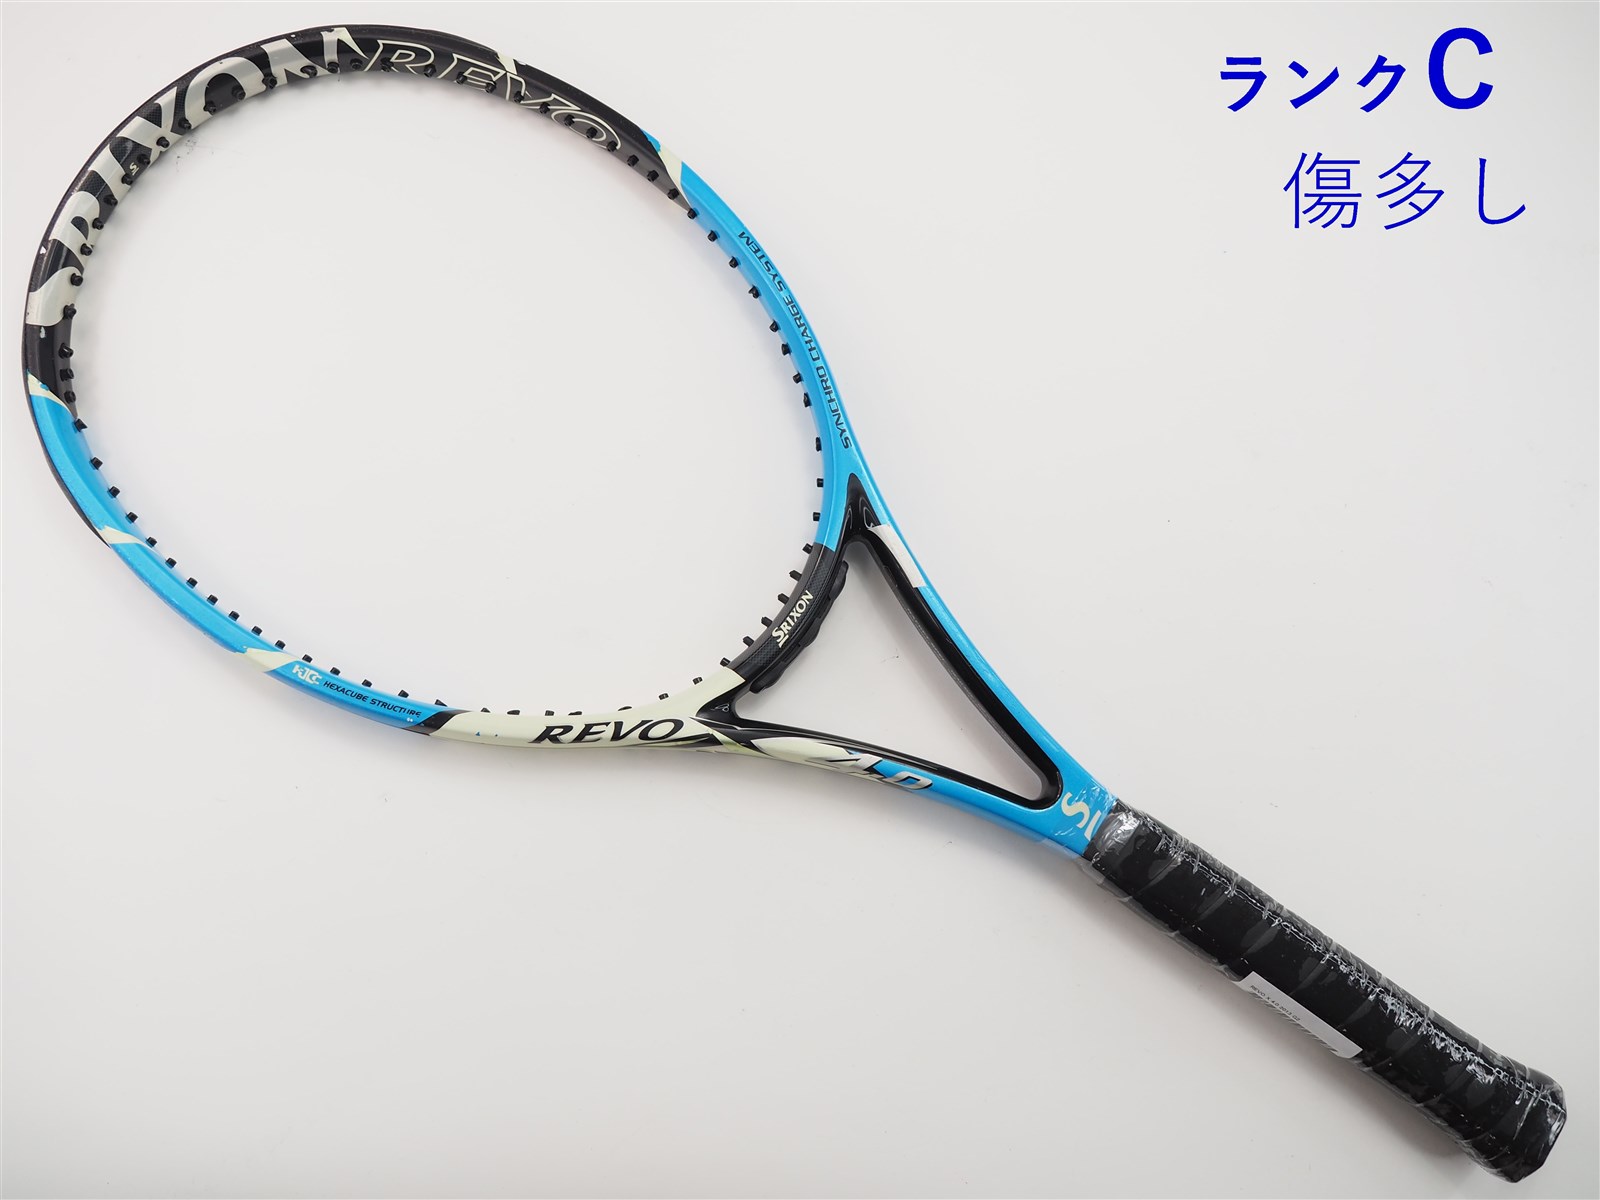 テニスラケット スリクソン レヴォ エックス 4.0 2013年モデル (G3)SRIXON REVO X 4.0 2013